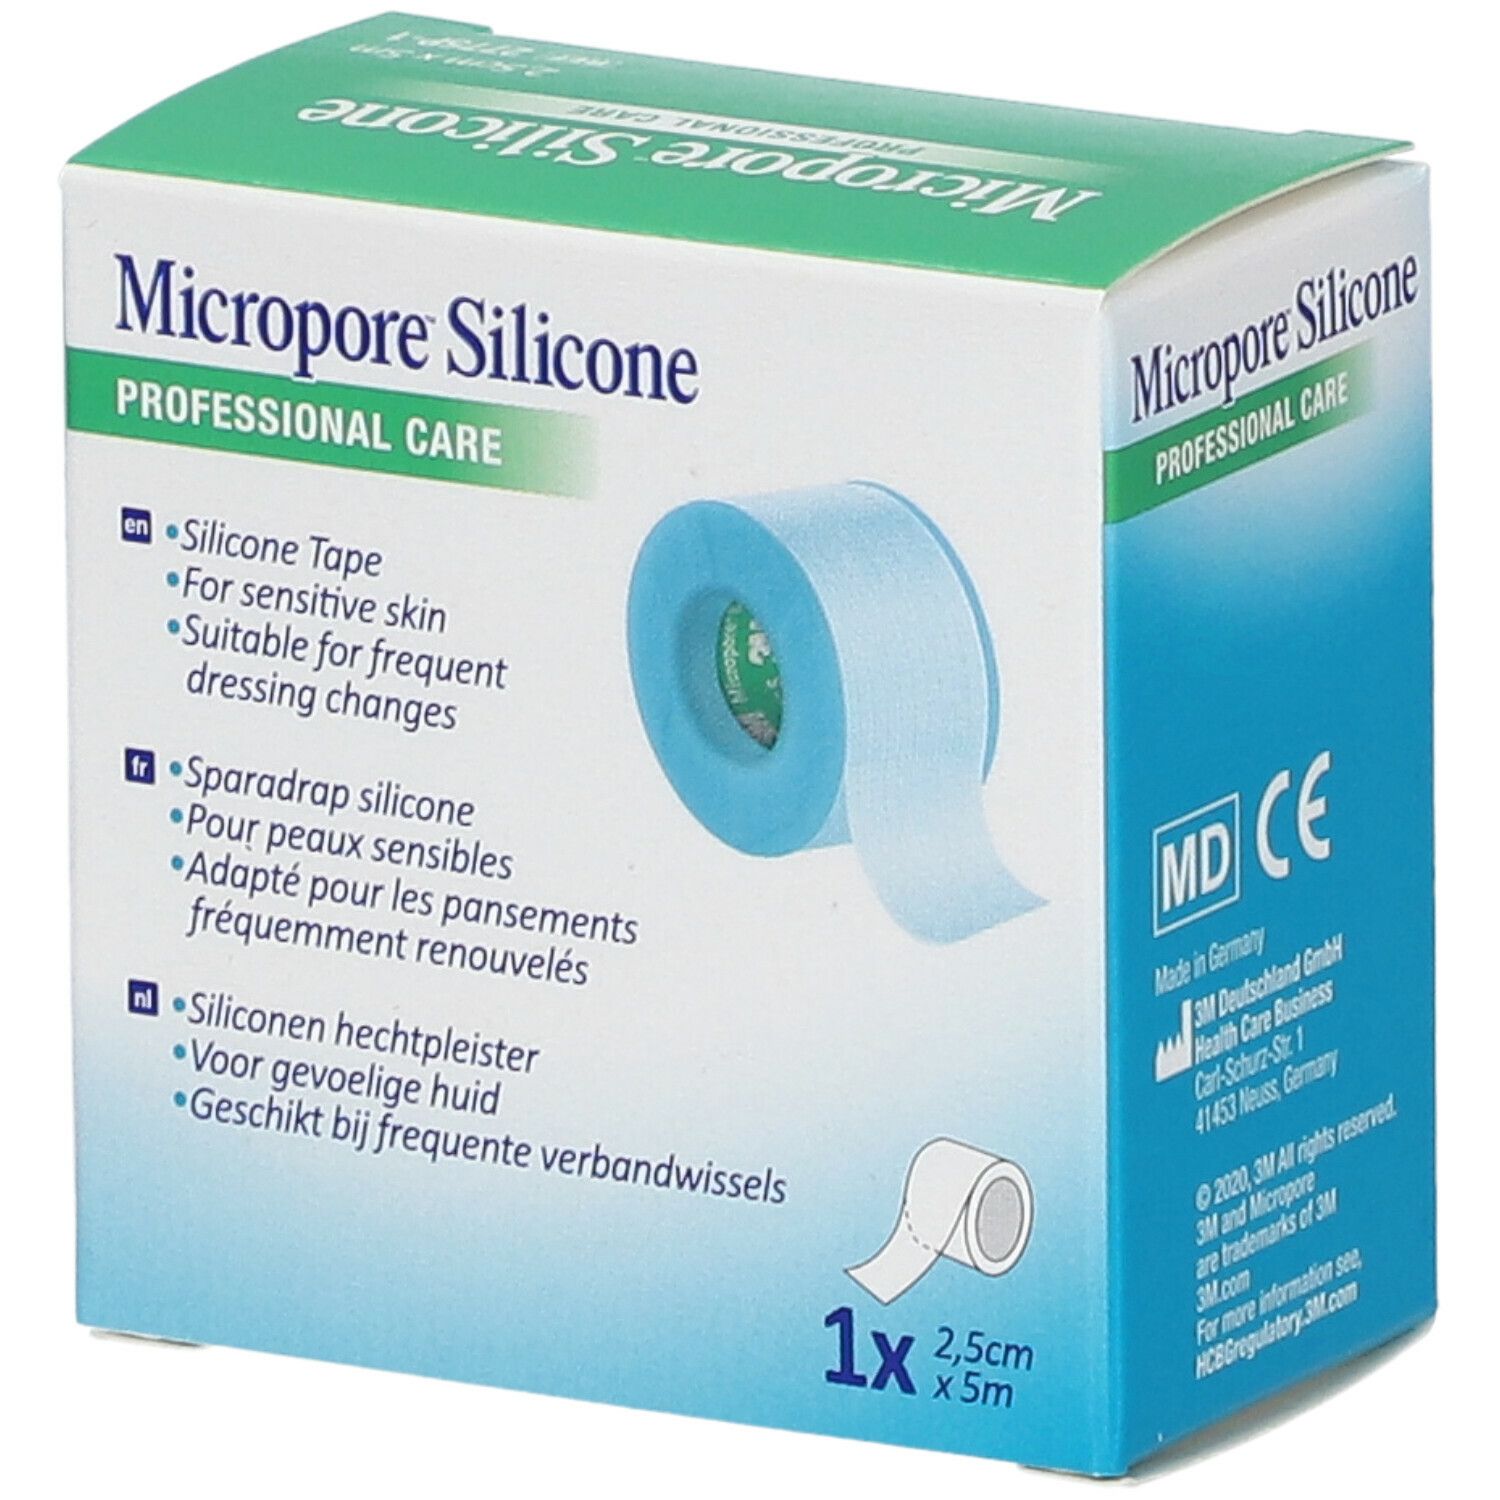 3M Micropore™ Silicone 2,5cm x 5m